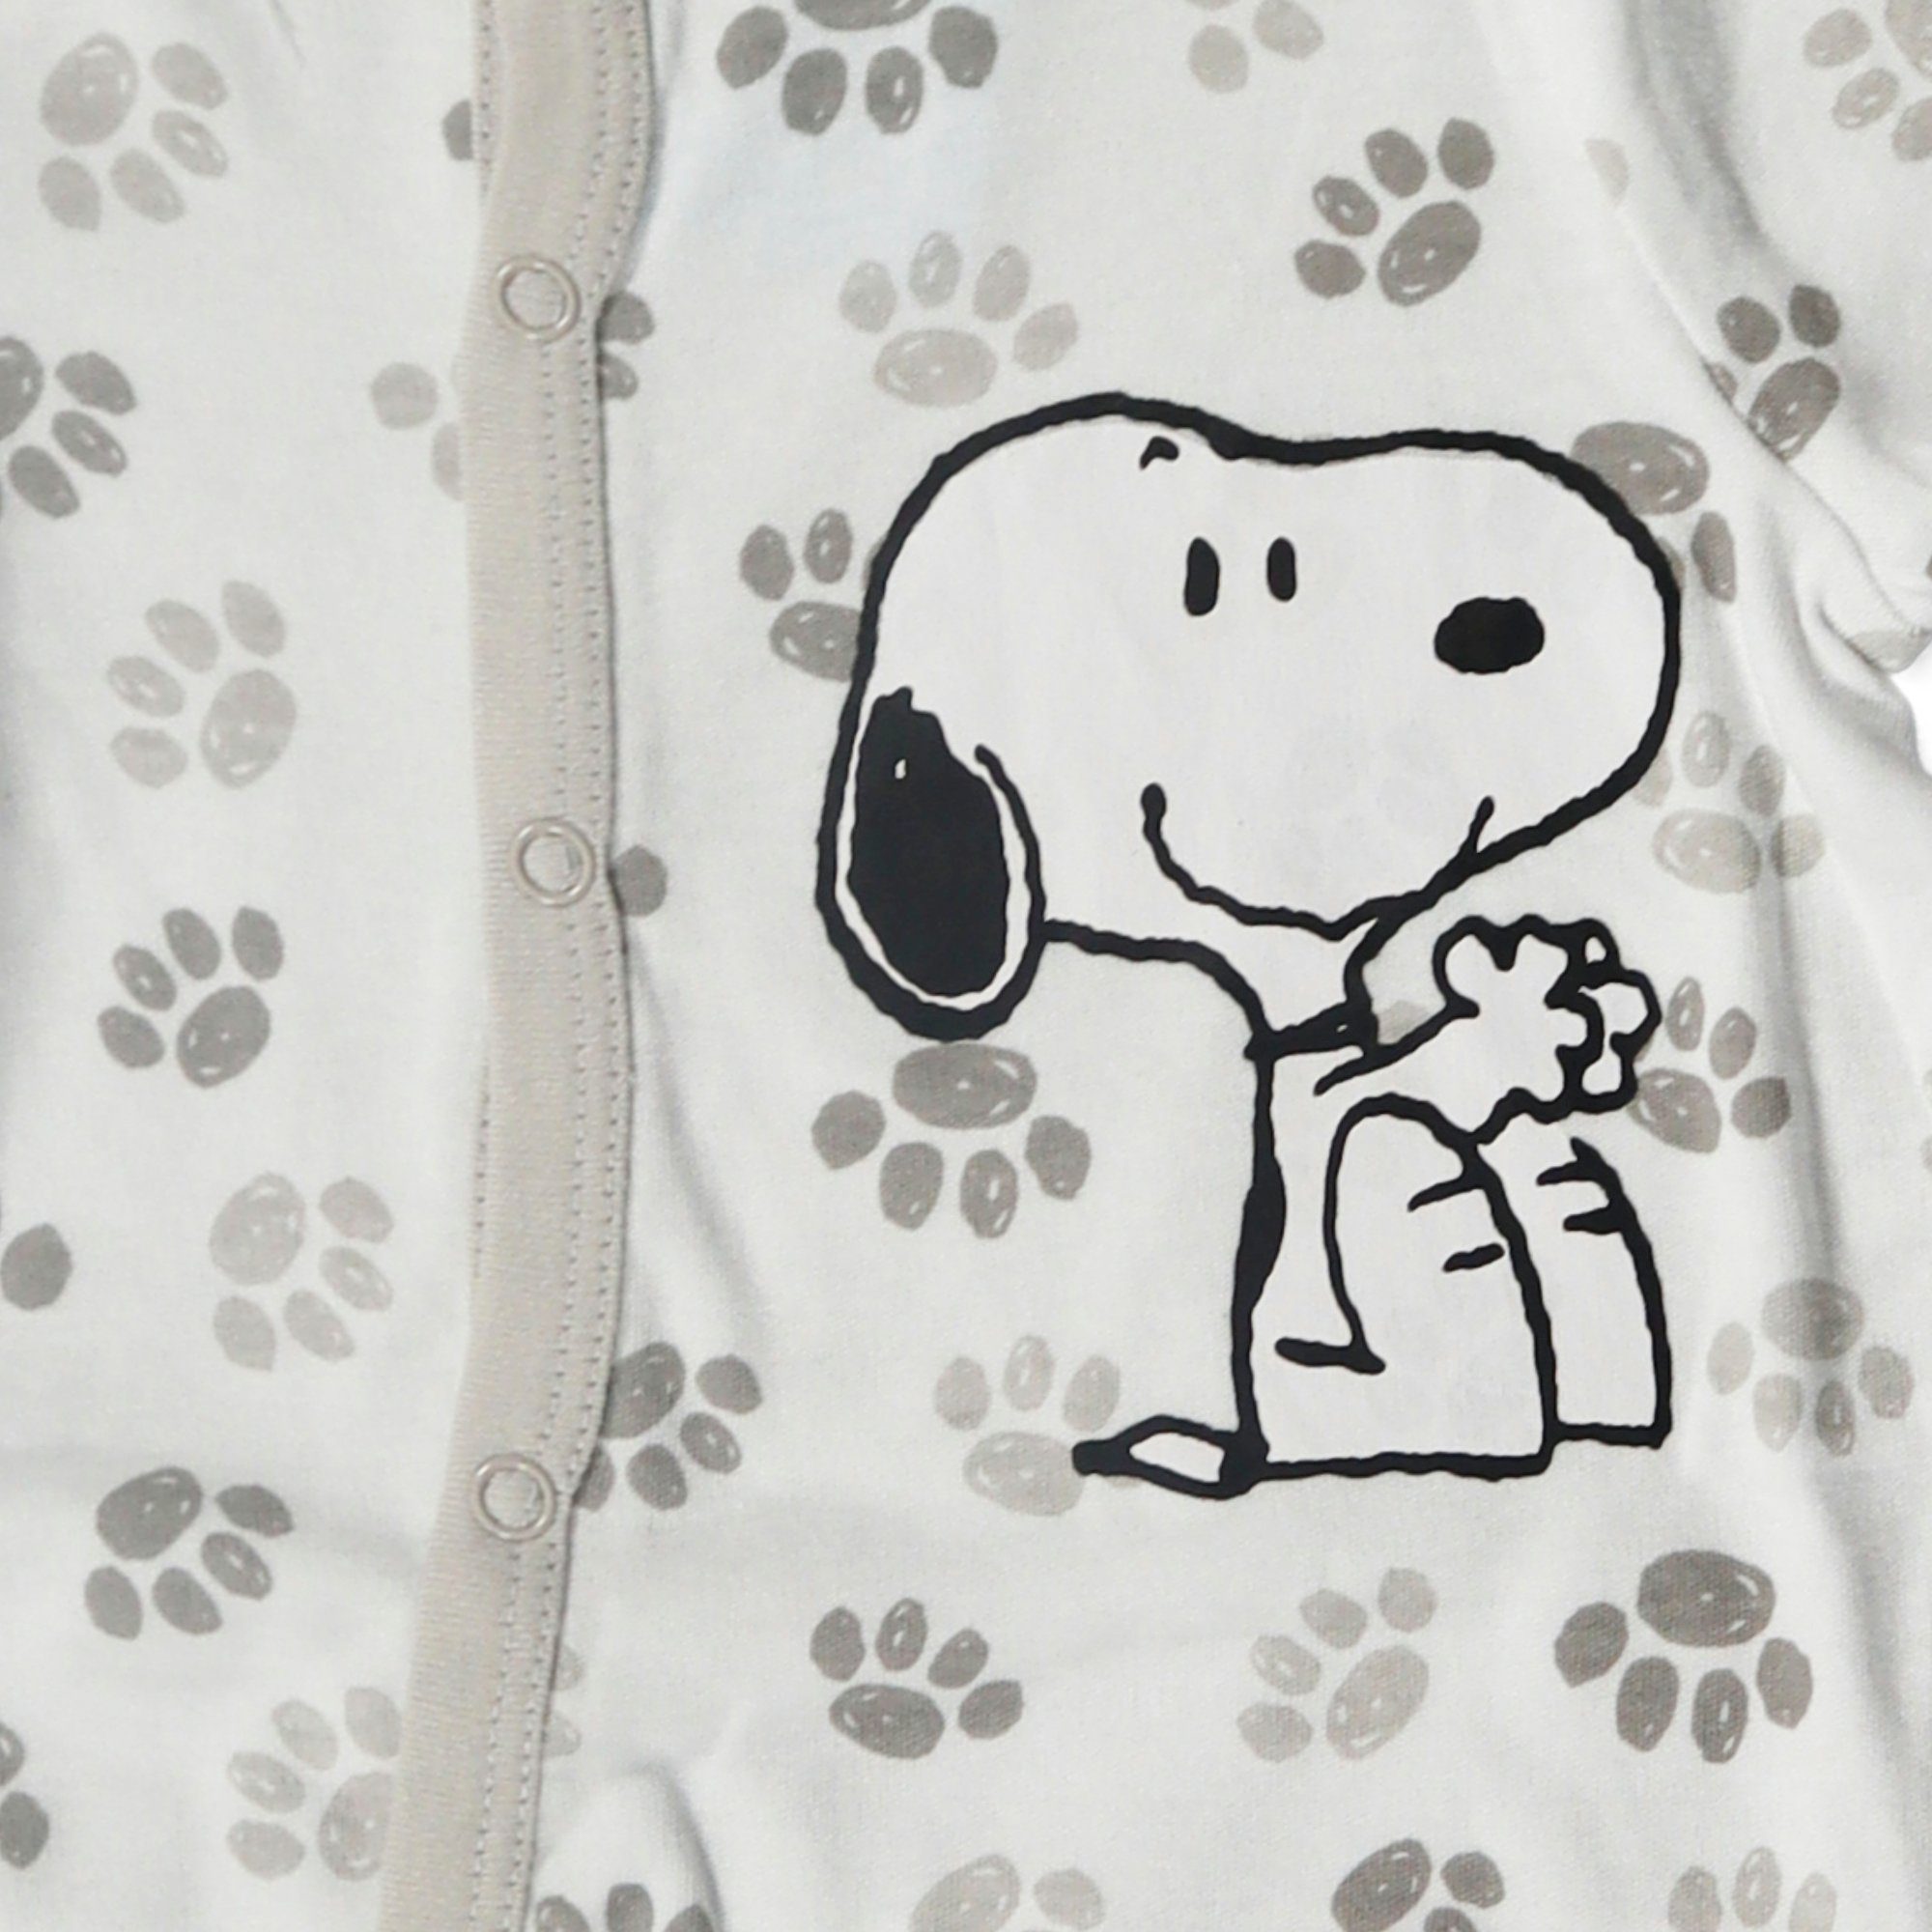 Sleep Strampler Baby Kleinkind Strampler Snoopy bis 62 92 Einteiler langarm Gr. 100% Snoopy baumwolle